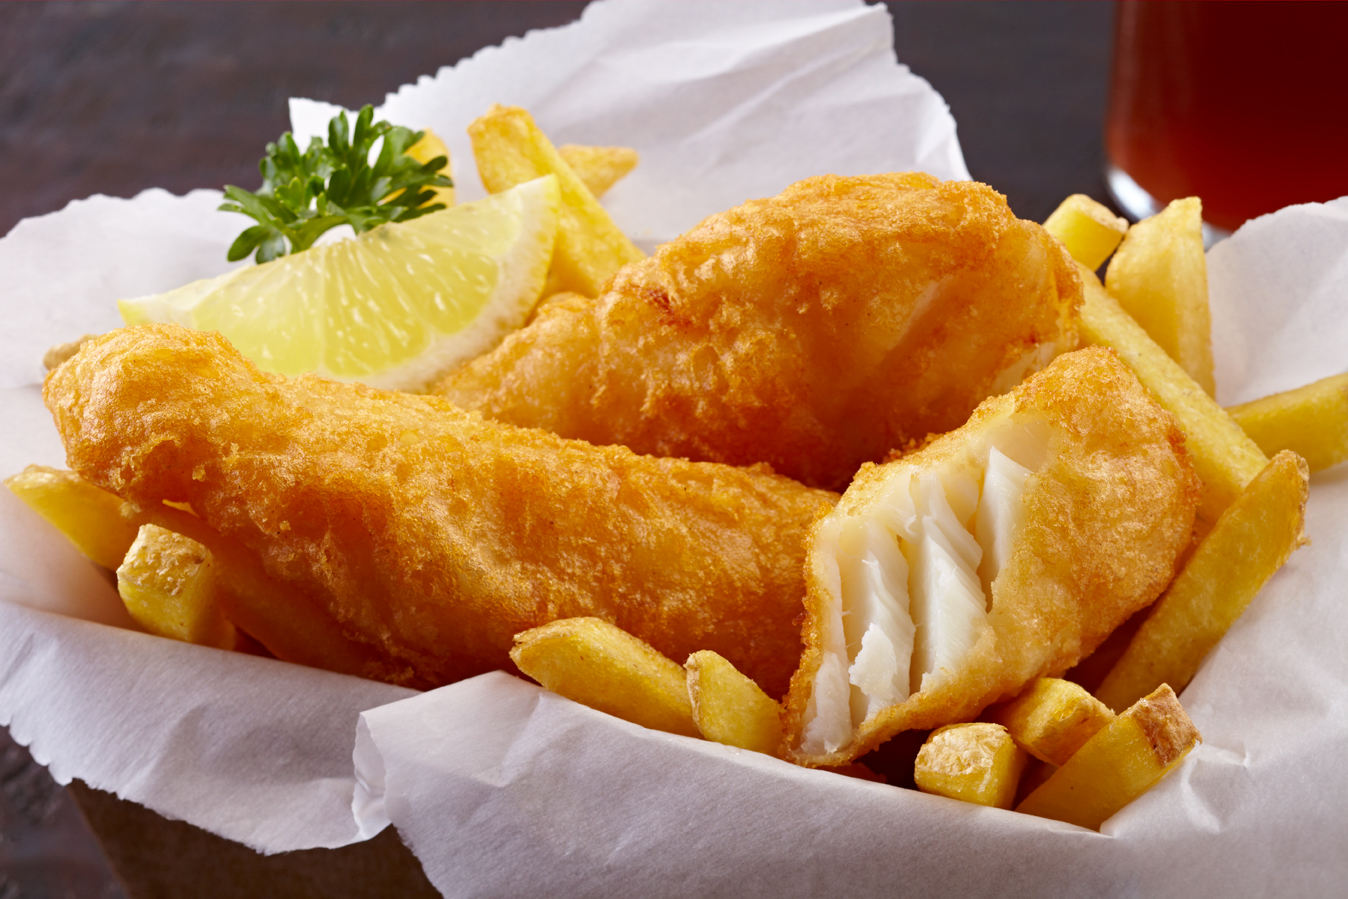 苏格兰的鱼和薯条 库存照片. 图片 包括有 午餐, 餐馆, 膳食, 传统, 舍德兰群岛, 海鲜, 海岛 - 205289402